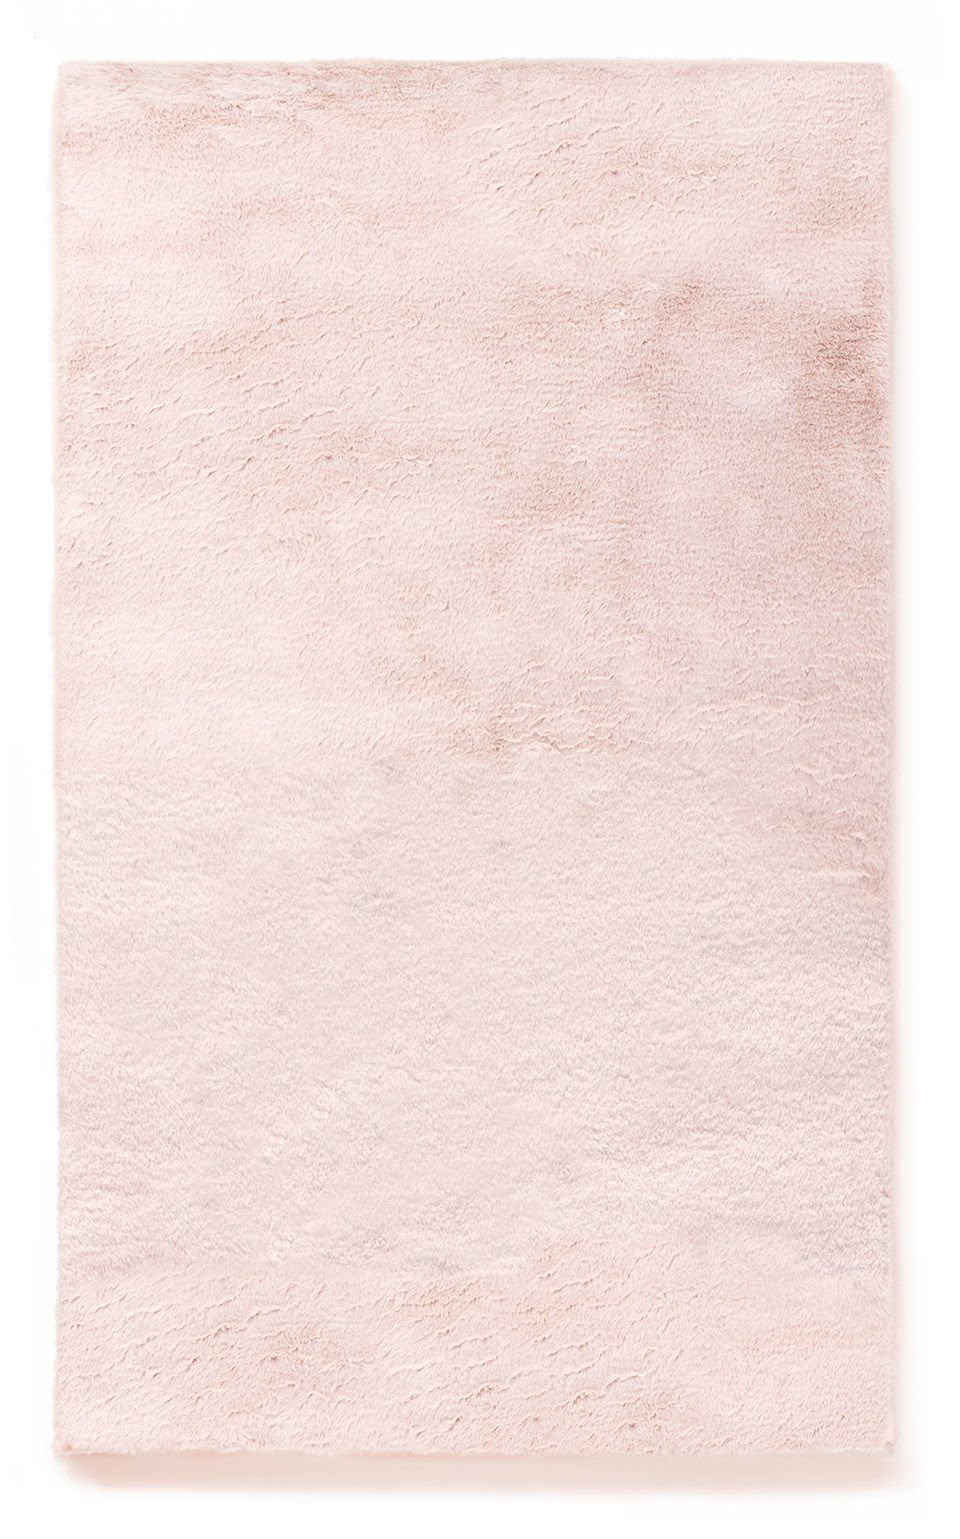 Plyšový kobereček VIVA růžový